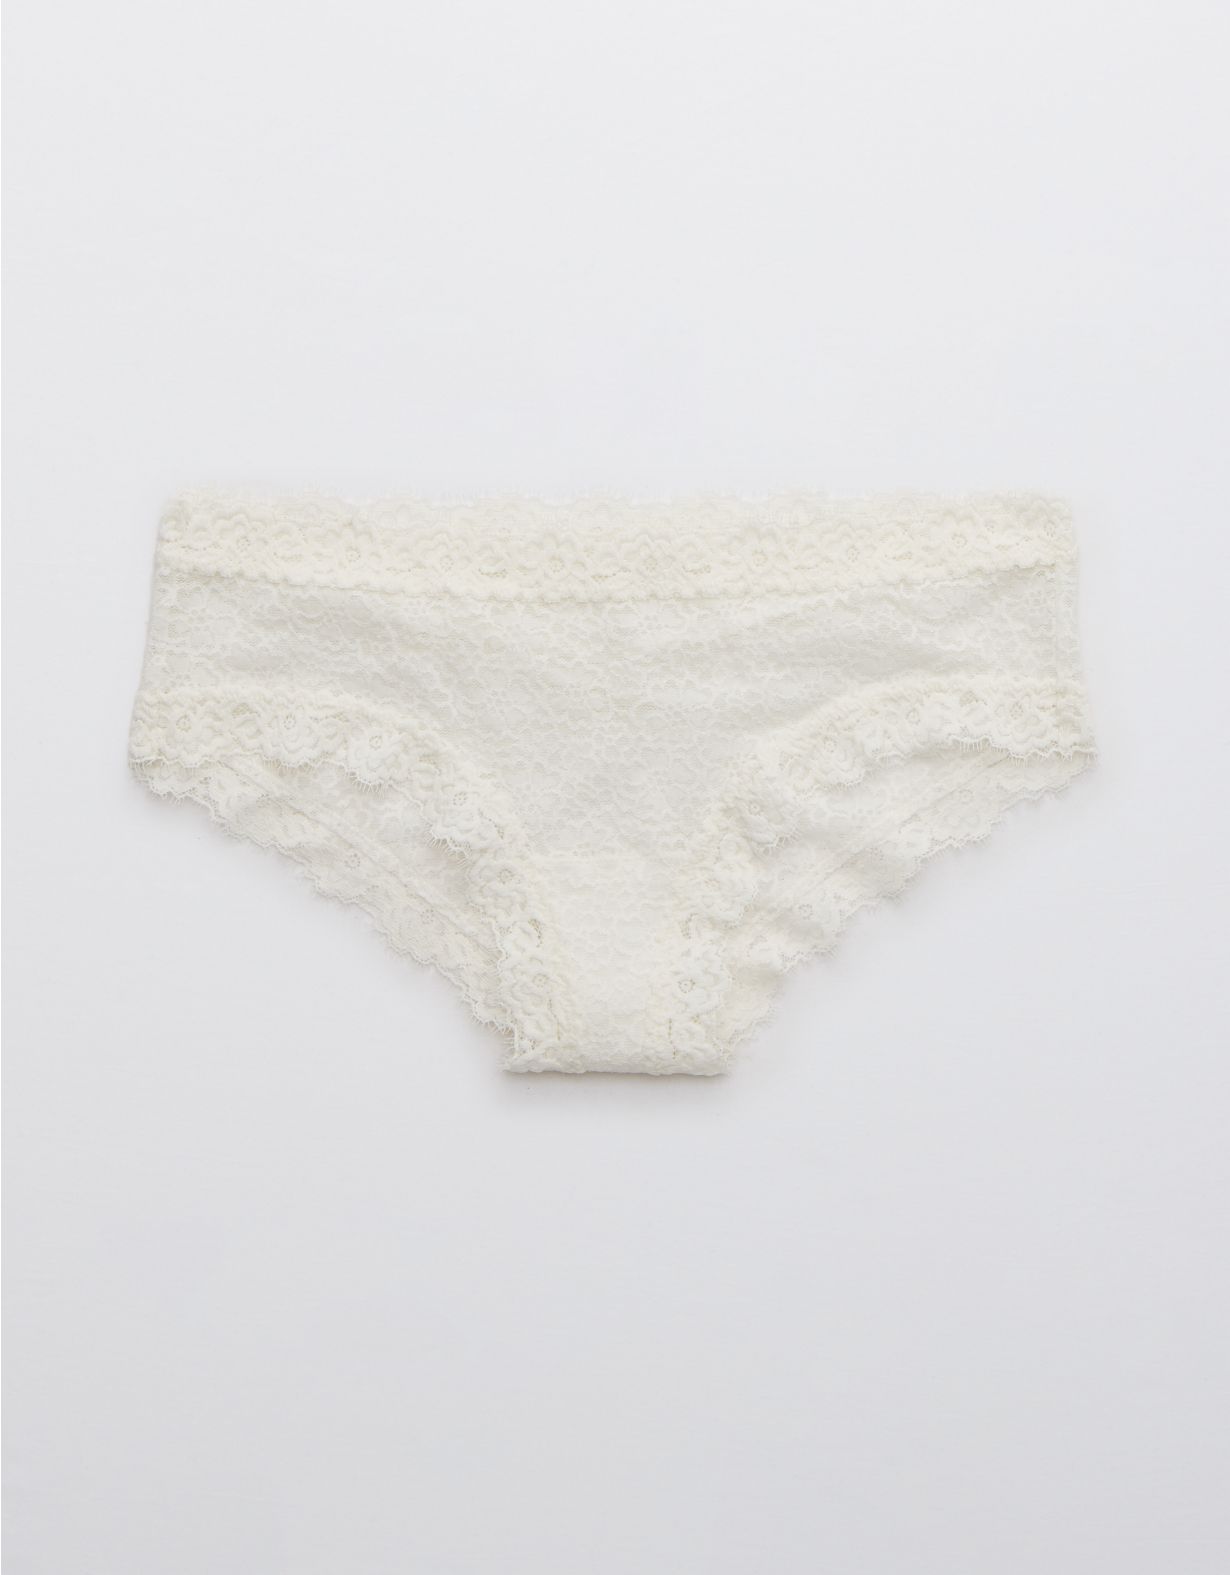 Aerie Eyelash Lace Cheeky Underwear